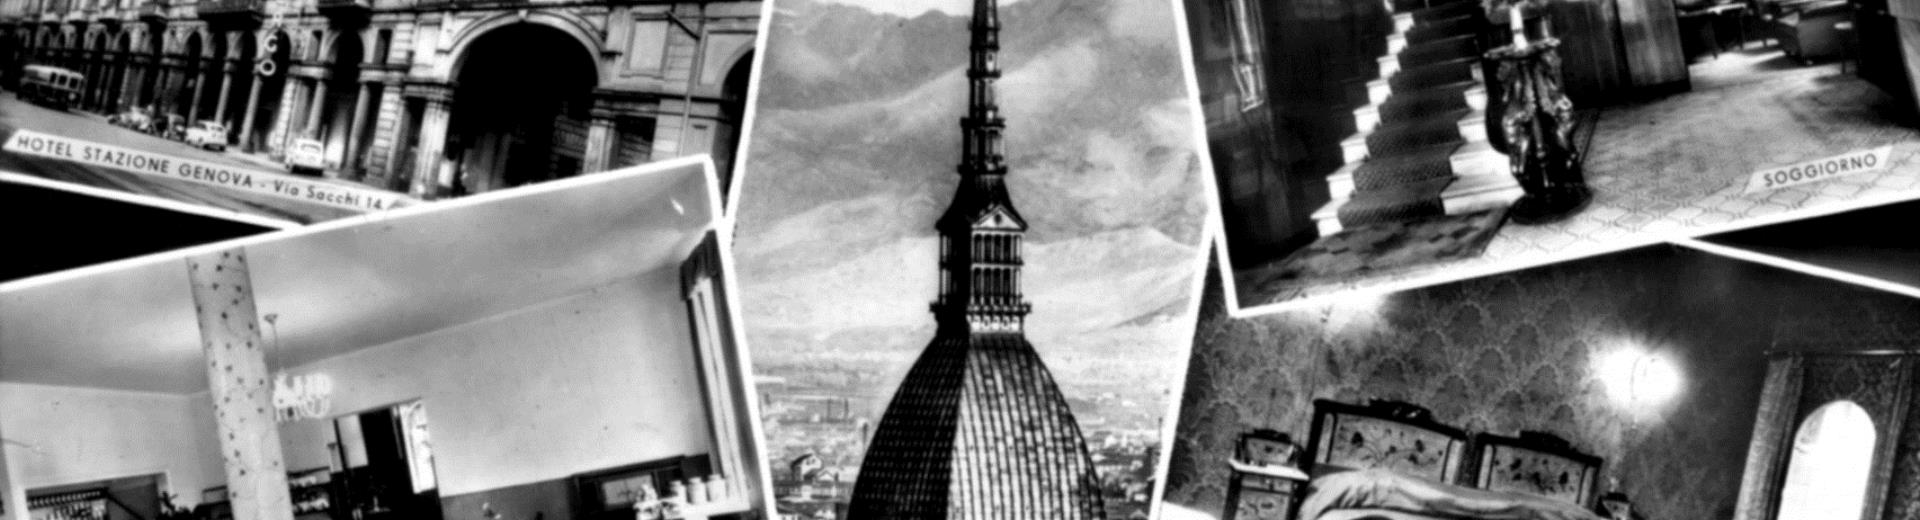 1950 - L'Hotel Genova subisce alcune modifiche ed aumenta la sua capacità ricettiva